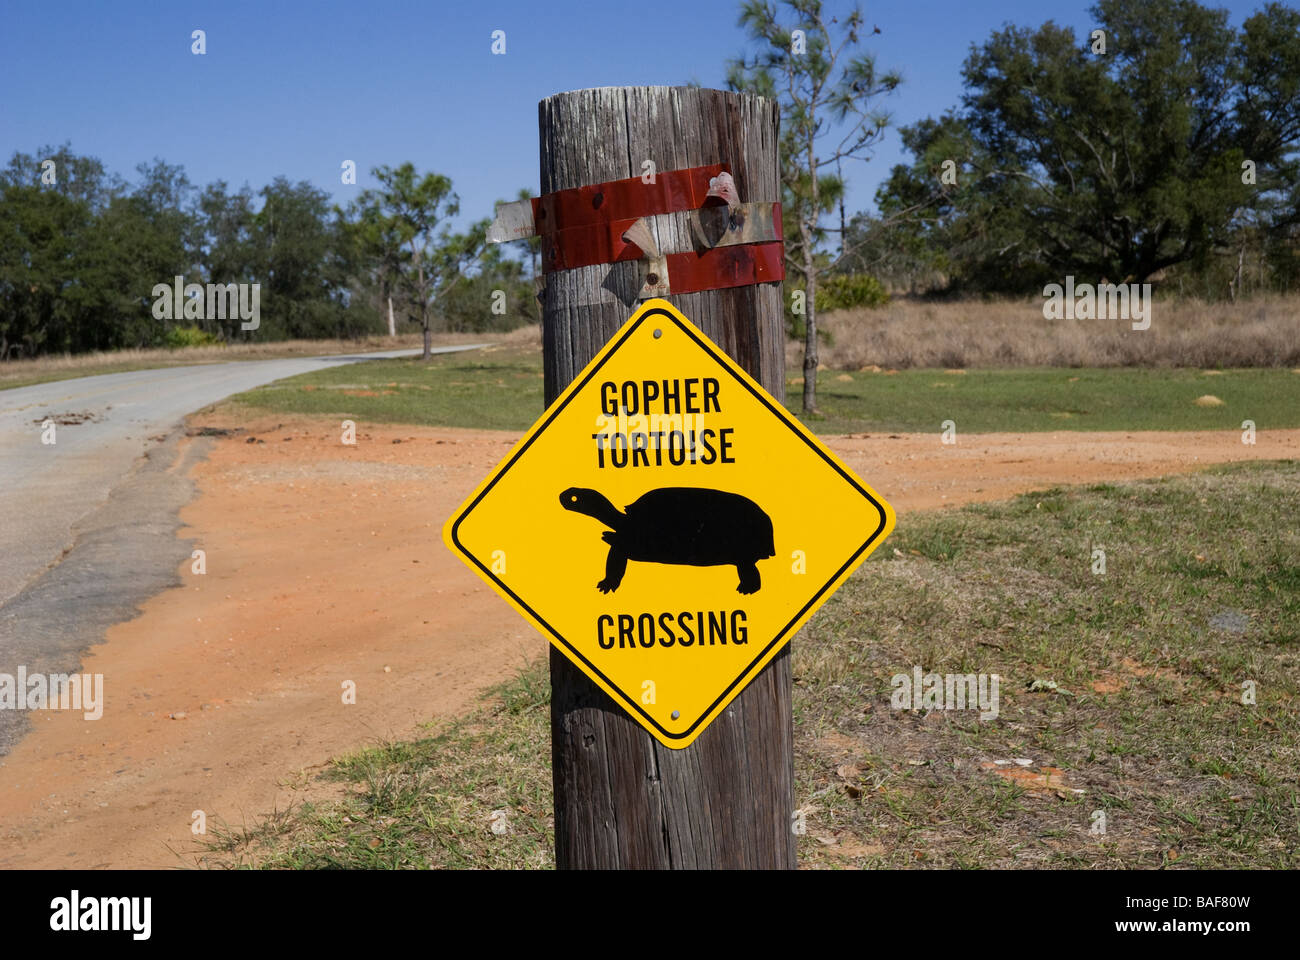 http://c8.alamy.com/comp/BAF80W/endangered-gopher-tortoise-crossing-sign-at-bok-tower-gardens-national-BAF80W.jpg